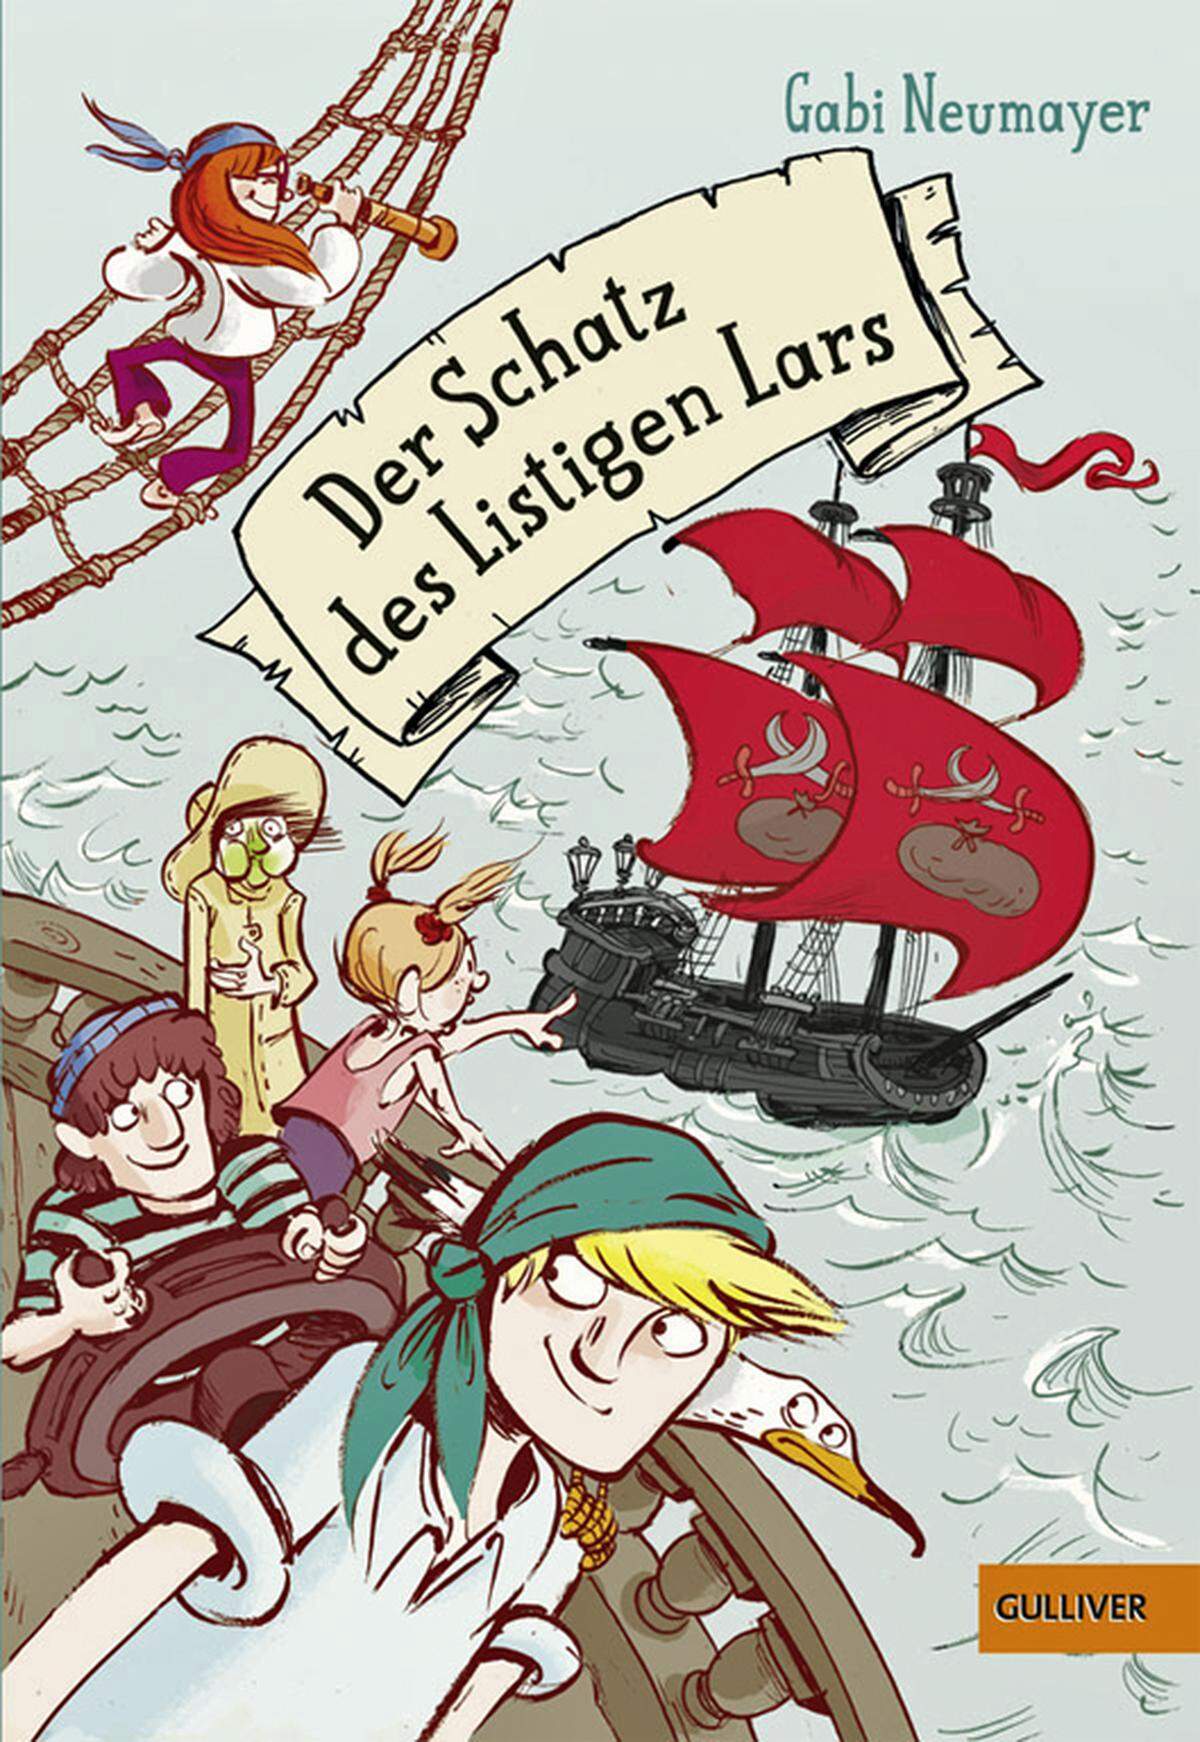 Die Insel Saphira ist eine Insel der Piraten. Sie führen dort ein - für piratische Verhältnisse - relativ unspektakuläres Leben. Das gilt auch für Mick und seine Freunde, allerdings nur, bis sie eine Schatzkarte finden und sich zu fünft inklusive Möwe Penelope auf die Suche machen. Verfolgt werden sie bei ihrer Fahrt durch das Vergessene Meer von Carlo, der mit allen Attributen eines bösen Teenagers ausgestattet ist, und seiner Crew. "Der Schatz des Listigen Lars" ist ein klassisches Abenteuerbuch, das piratenbegeisterte Kinder auch sprachlich vergnügt; von Ausdrücken wie "schweigen wie ein Steinfisch" über "Abwarten und Korallentee trinken" bis zu "Heiliger Thunfisch". Es ist eine Geschichte voller Geheimnisse und Rätsel, die Autorin Gabi Neumyer sprachlich wie inhaltlich komplex erzählt. Erschienen bei Beltz. Alter: Ab neun Jahren.